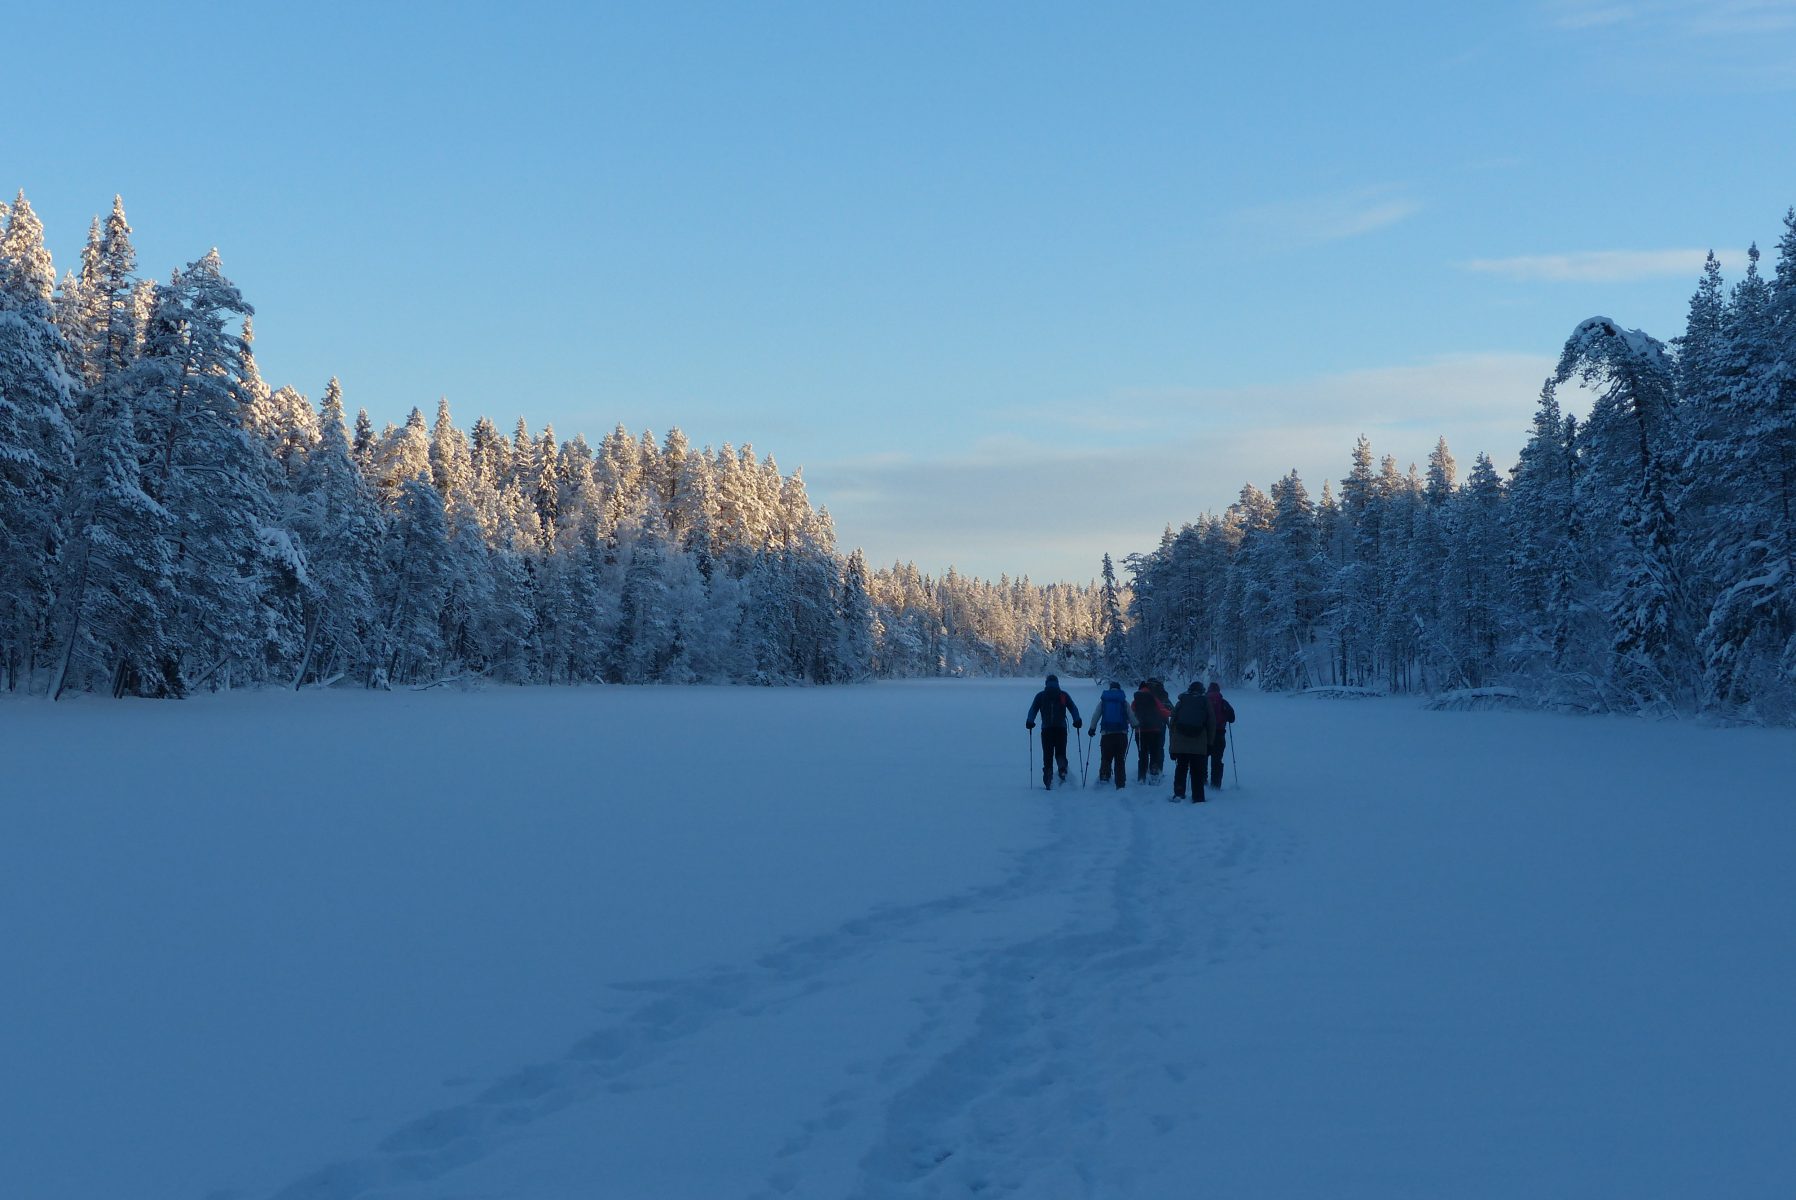 Ryhmä lumikenkäilijöitä tammikuun "sinisessä hetkessä" järven jäällä. Ympärillään kauniin kuuraiset puut.